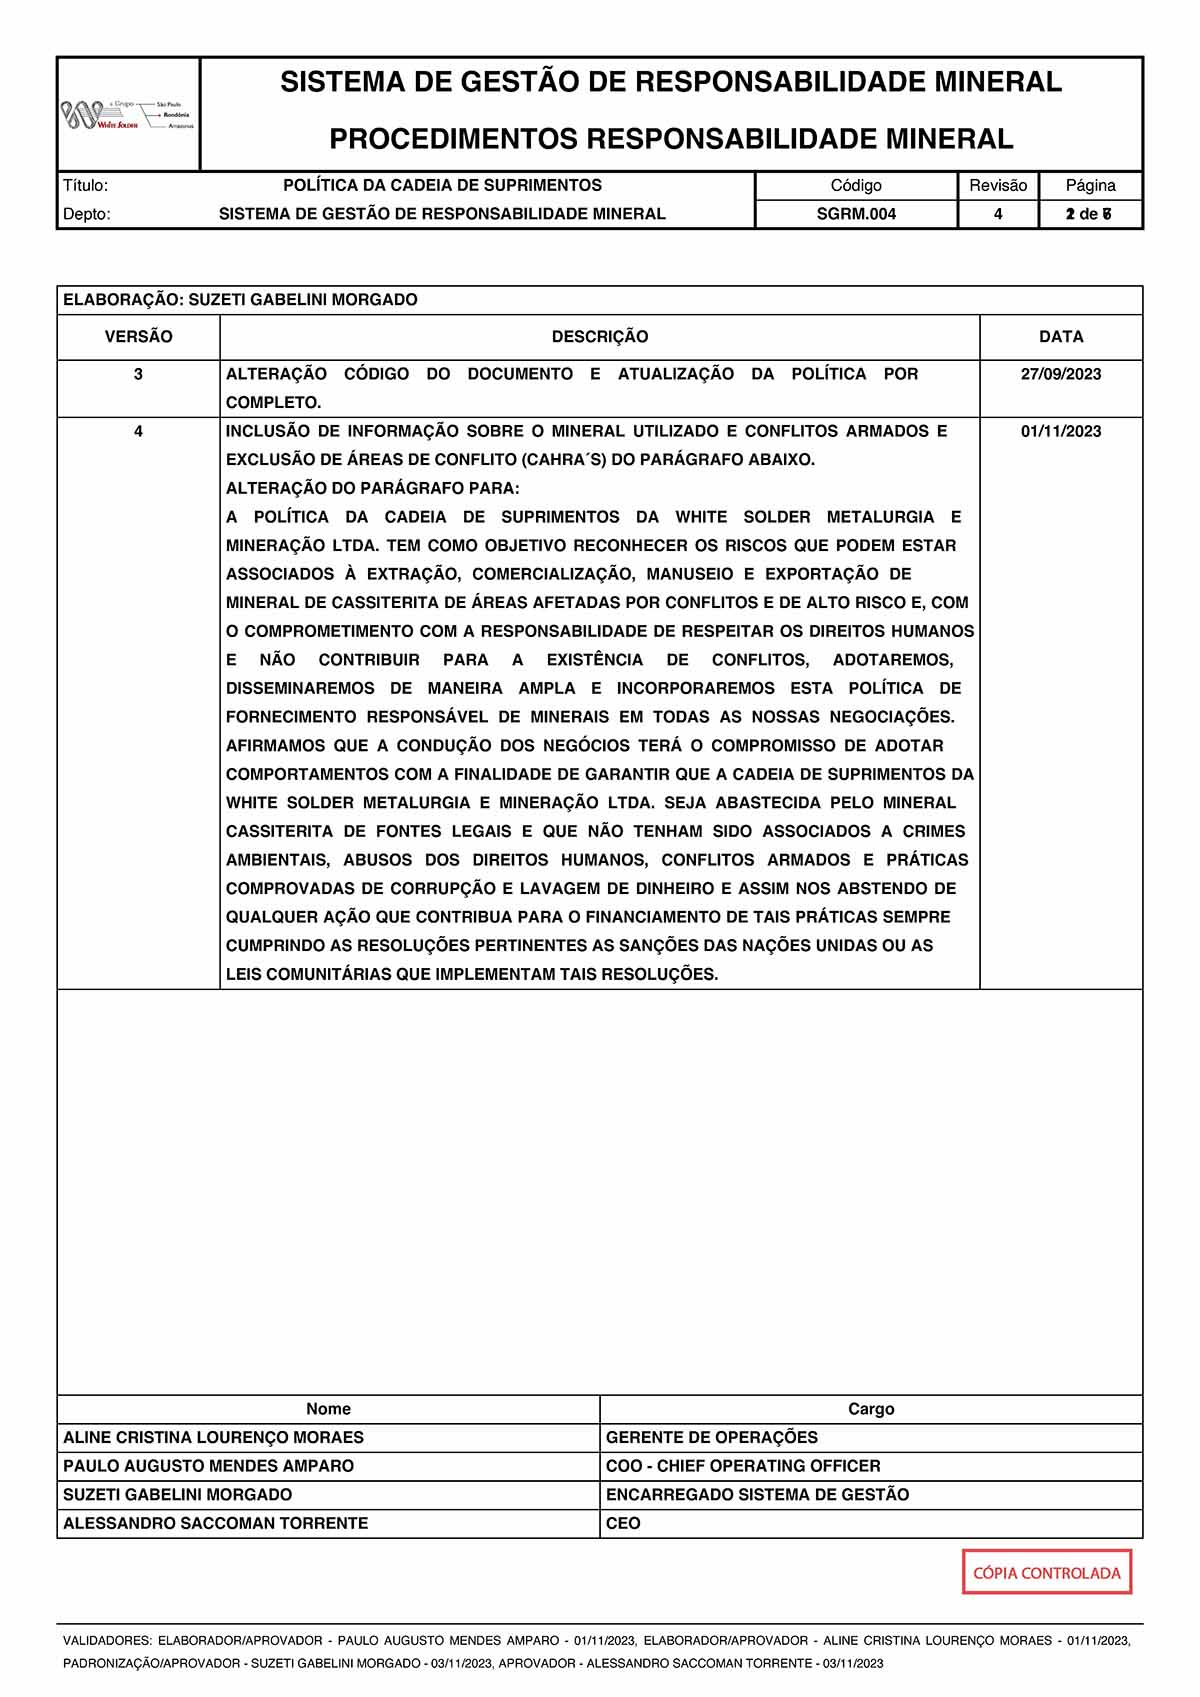 SGRM.004 - Política da Cadeia de Suprimentos REV.004_Página_2